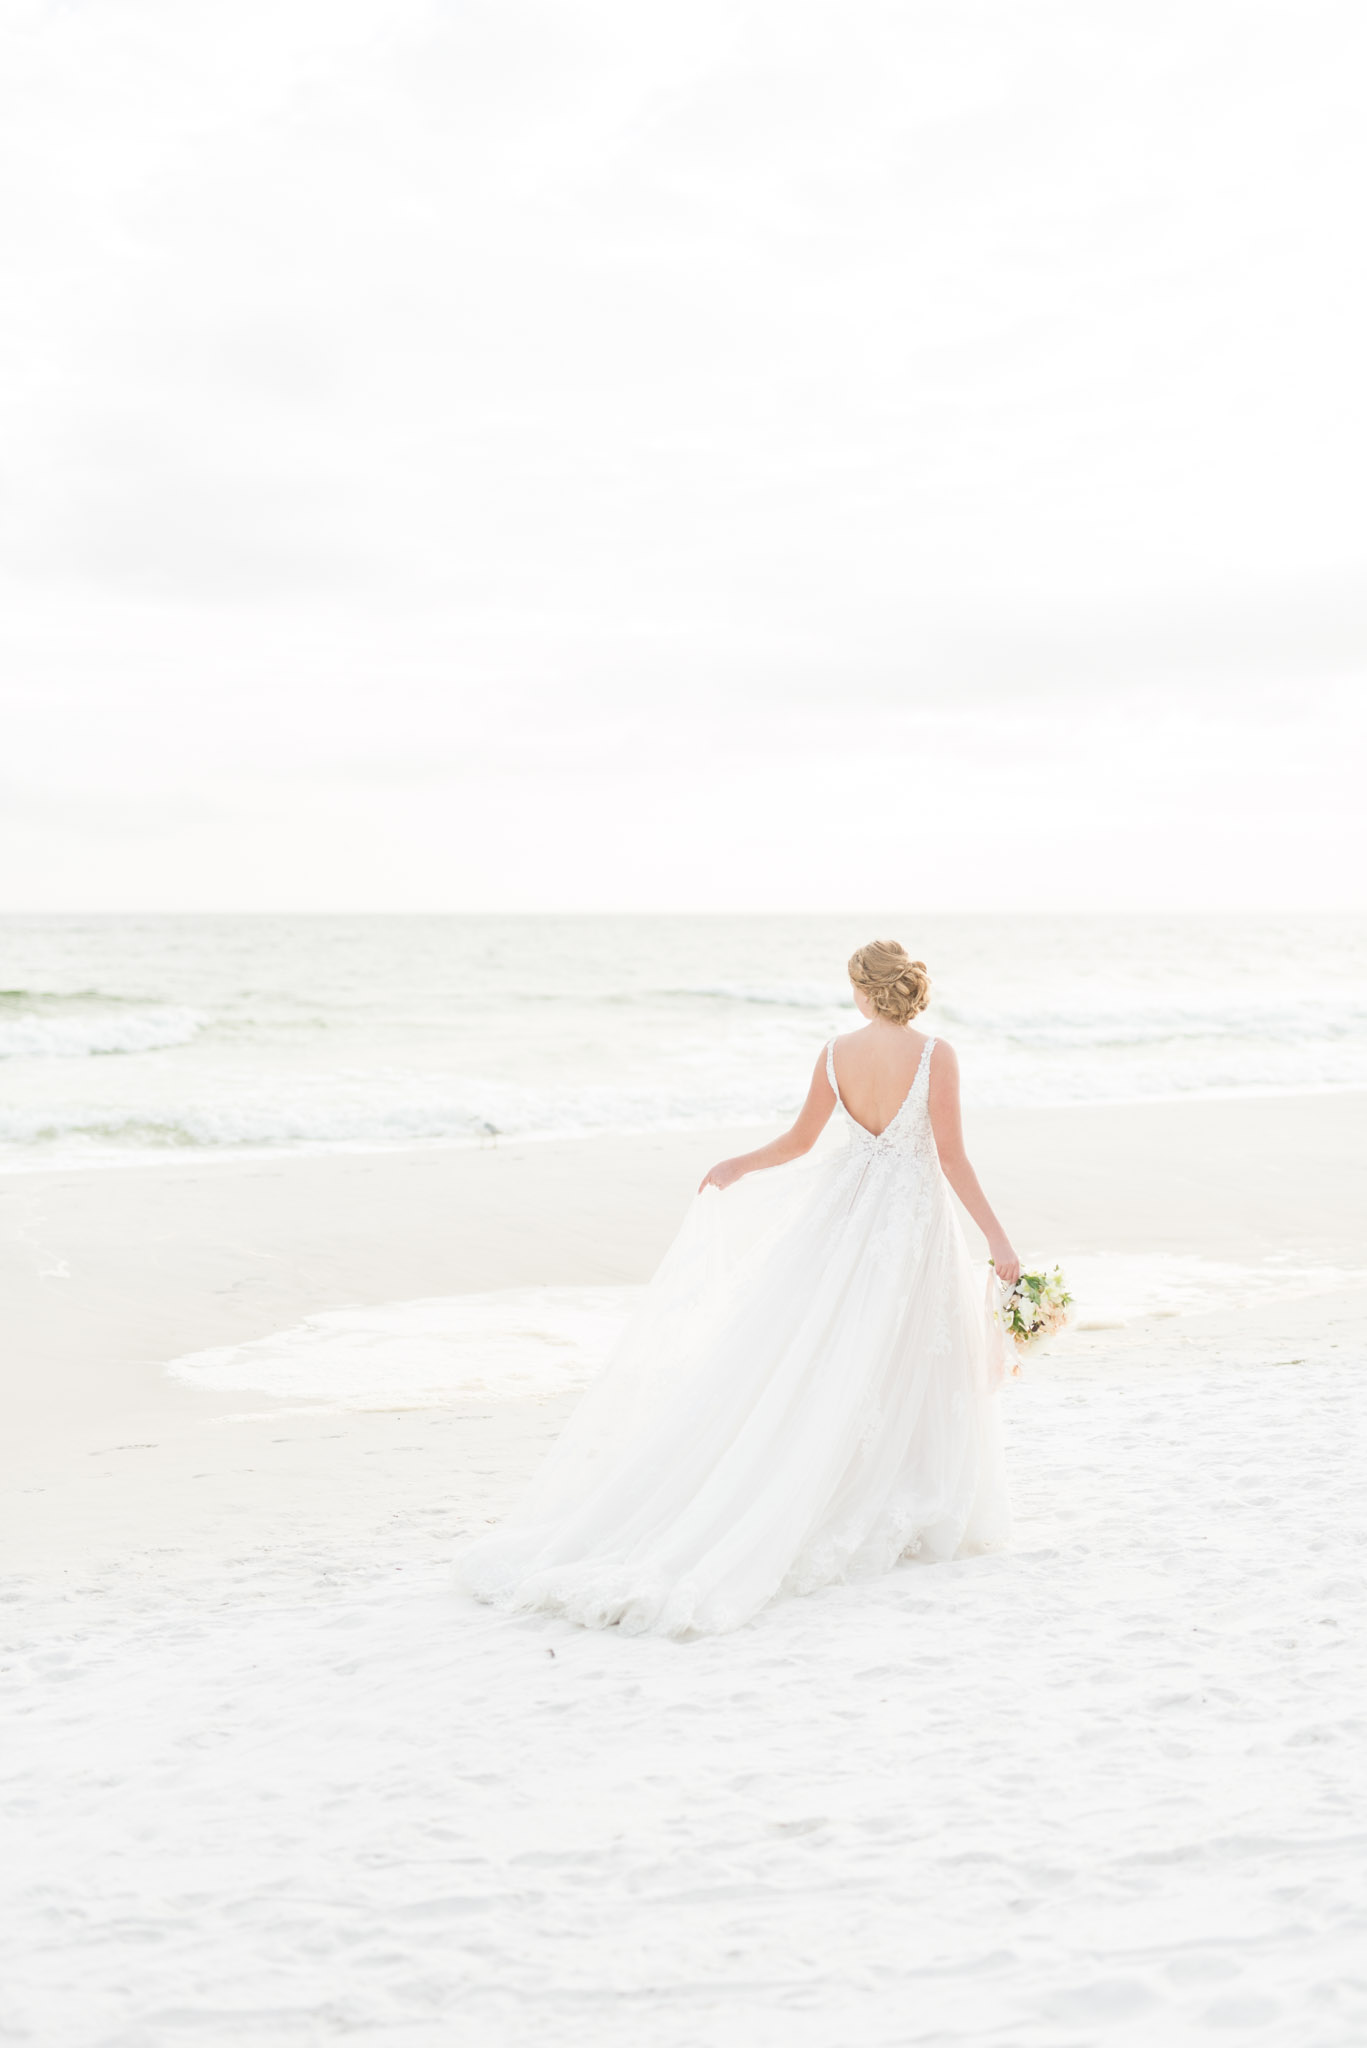 Bride walks on sunset beach.